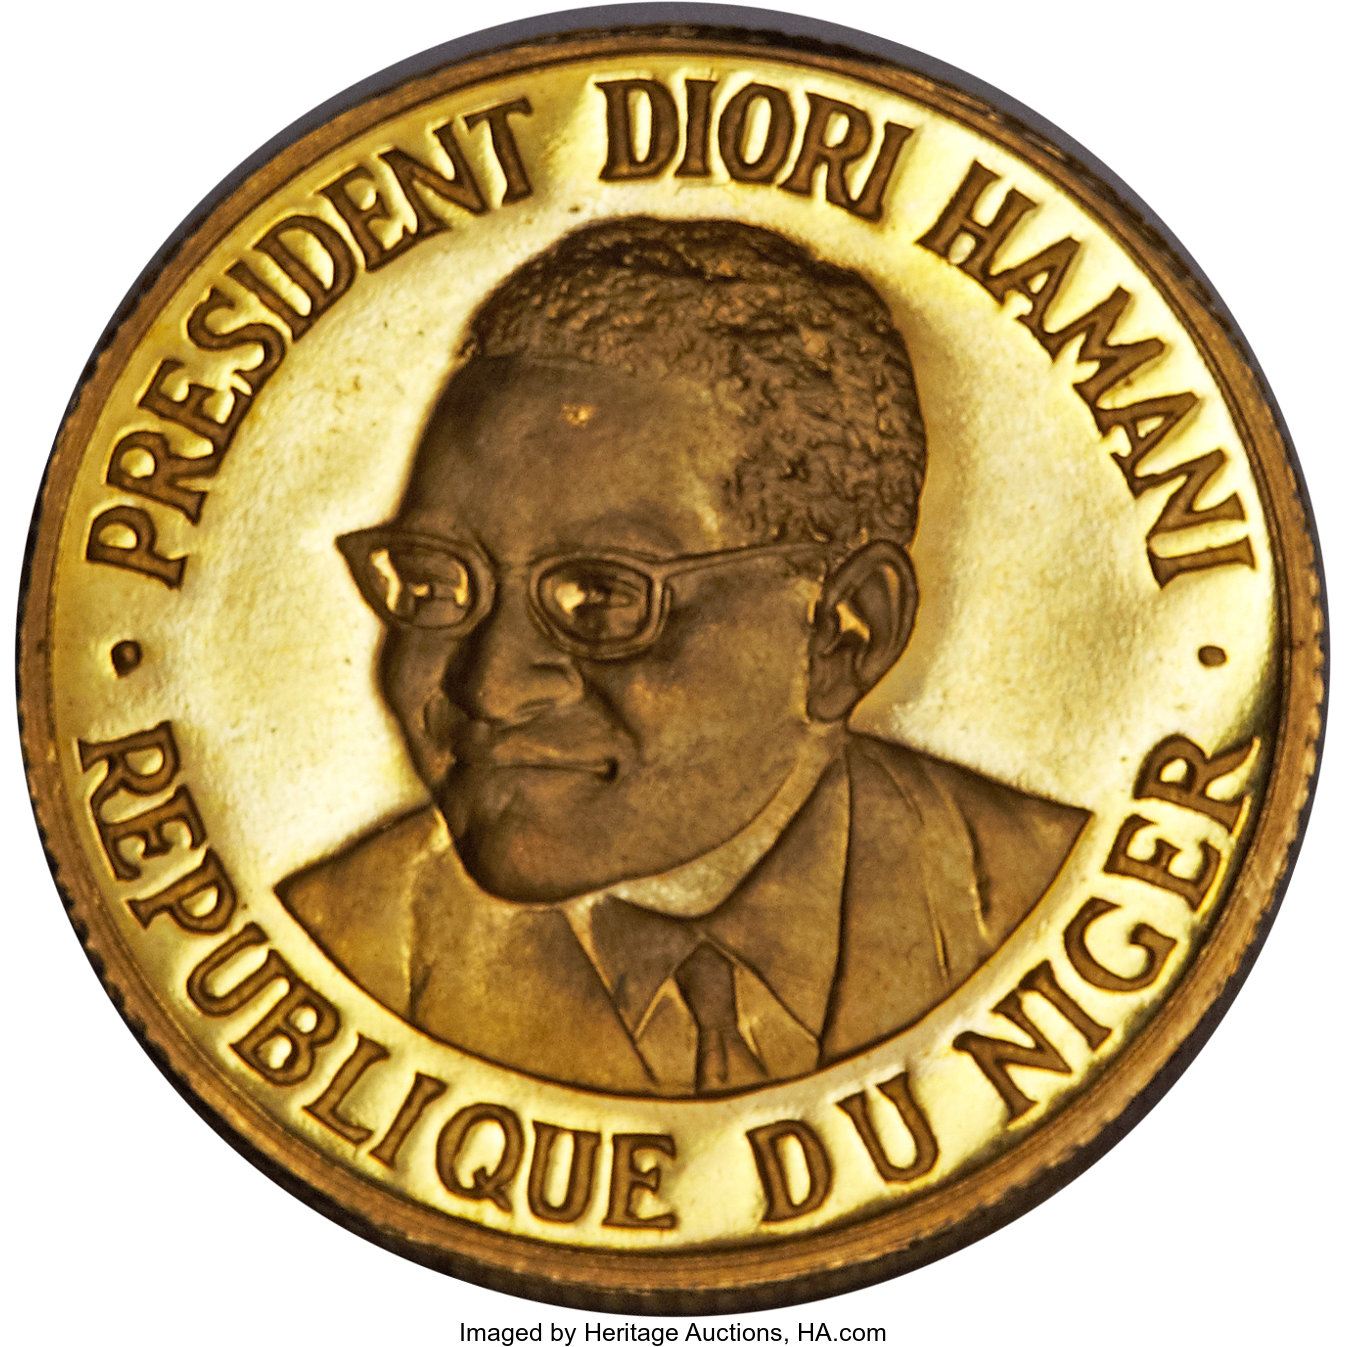 10 francs - Président Diori Harmani